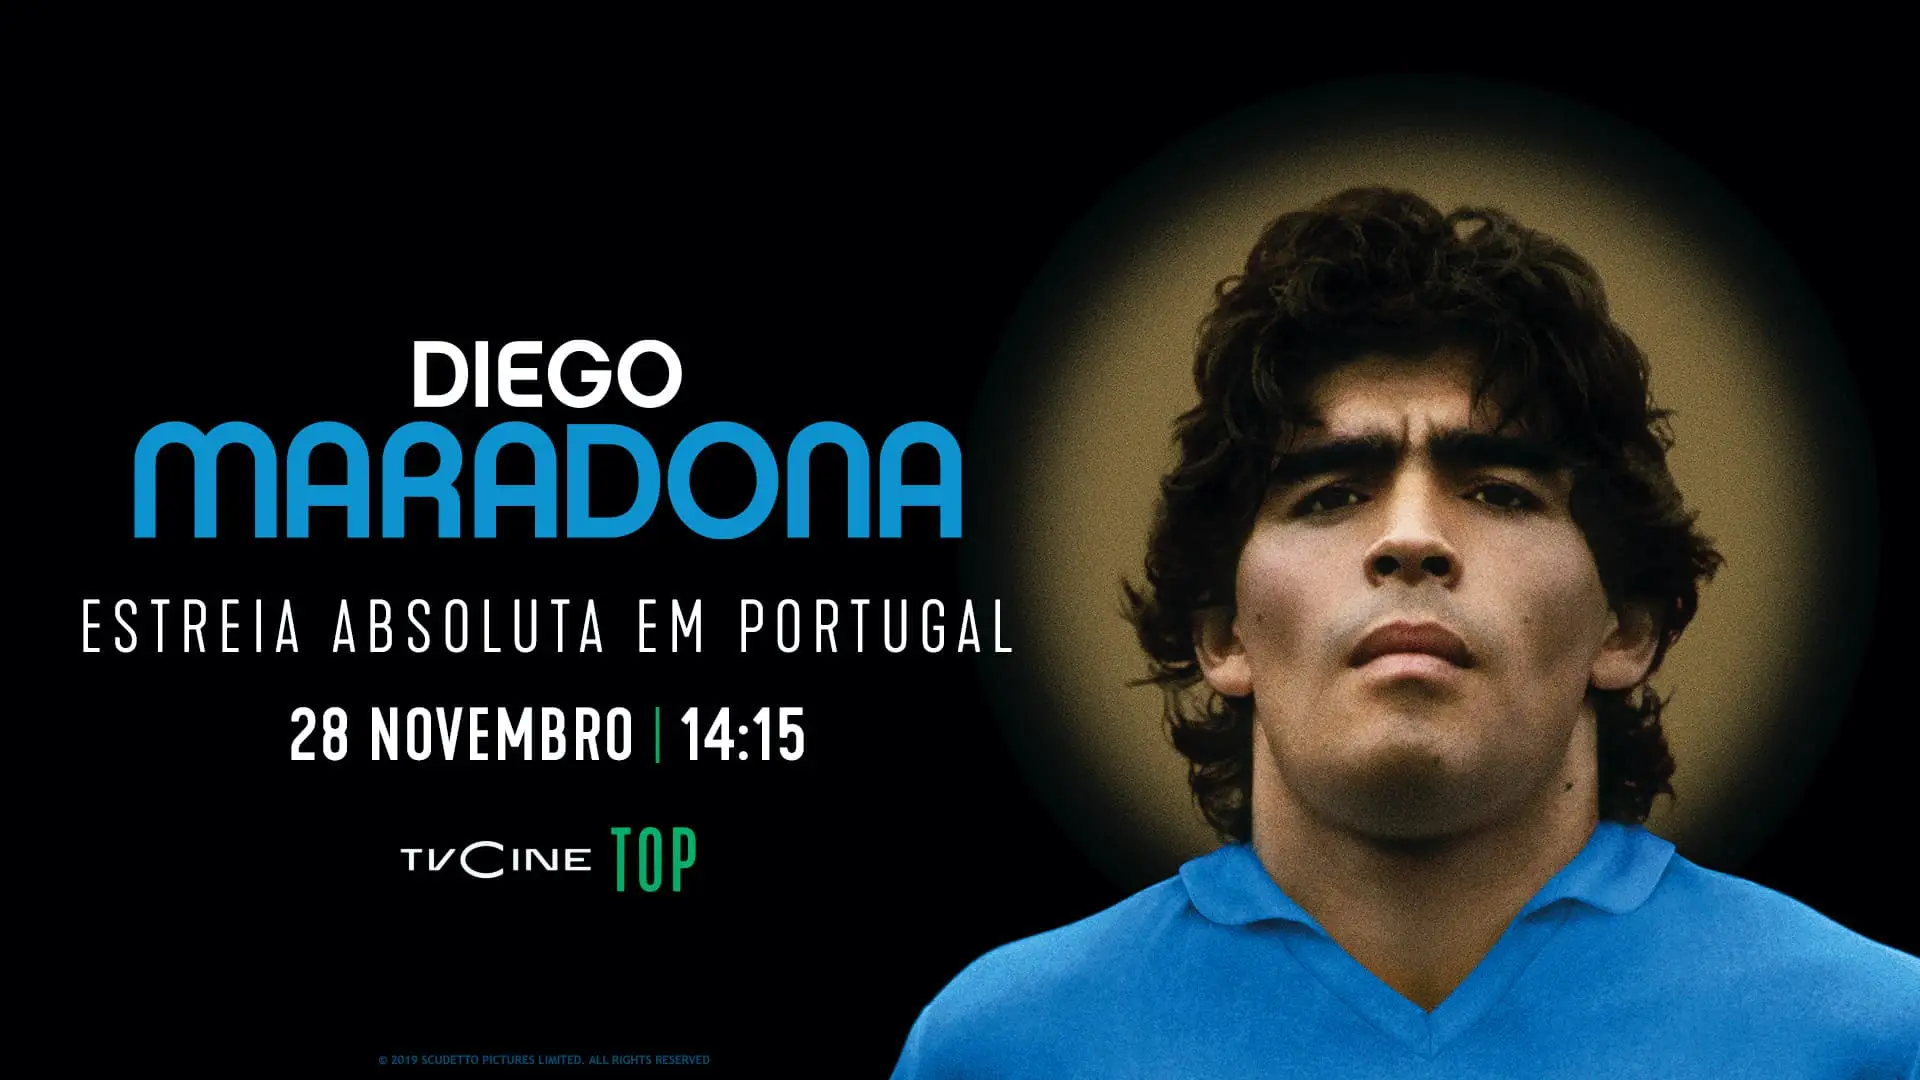 Diego Maradona Tvcine